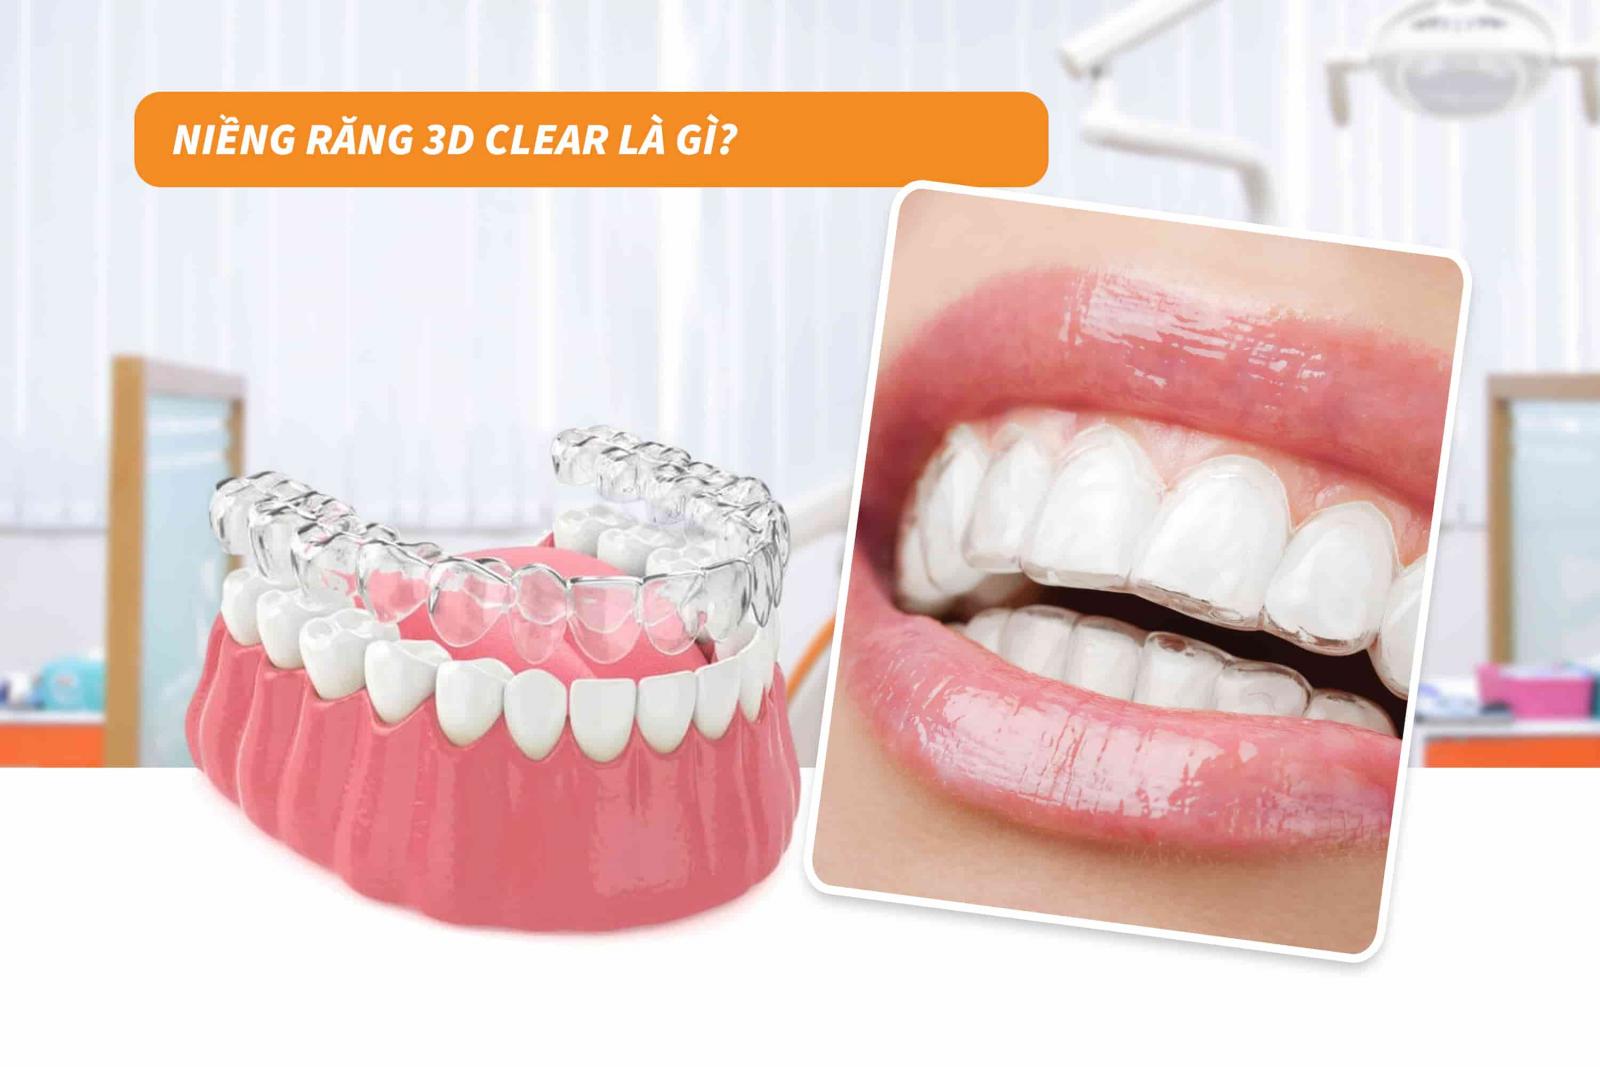 Niềng răng 3D Clear là gì?